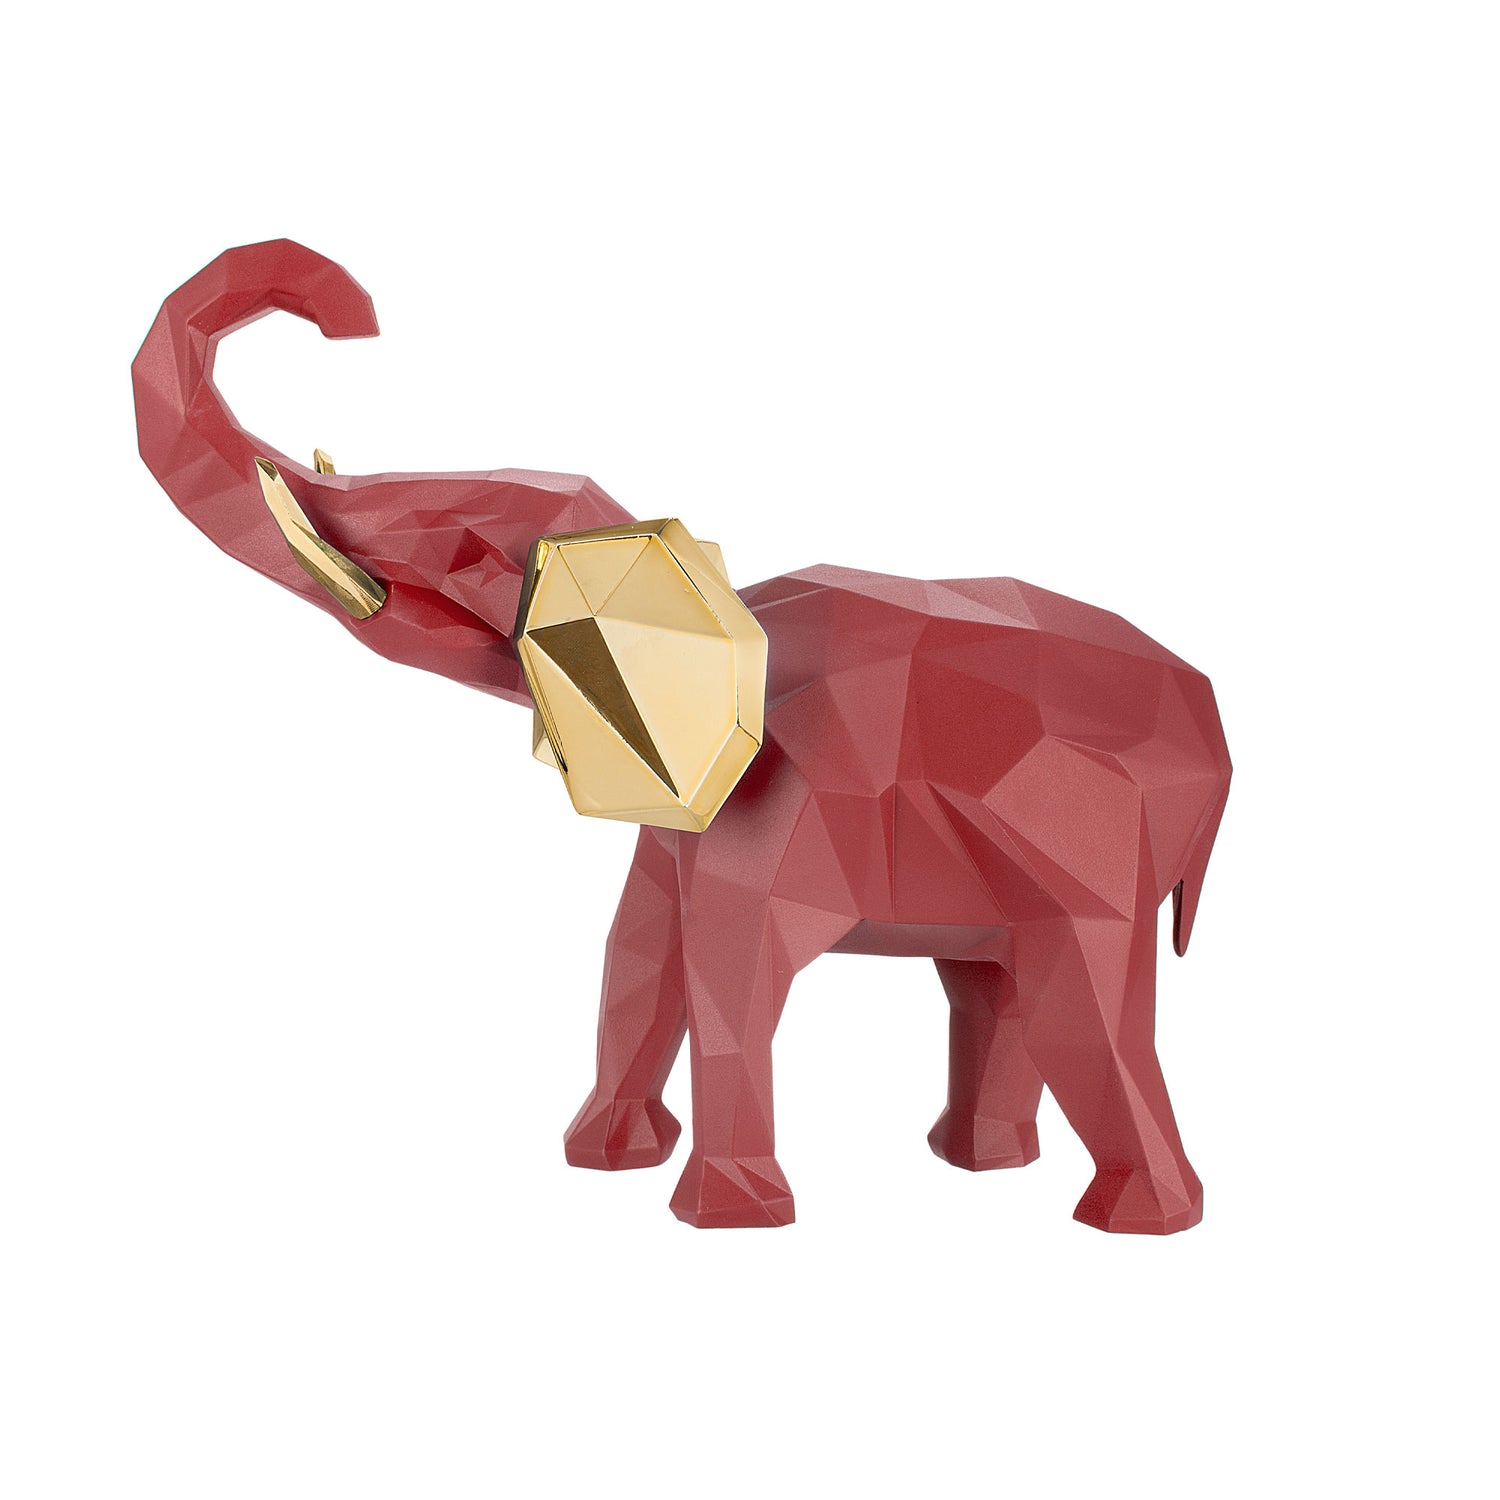 BONGELLI PREZIOSI Decorazione Elefante Stilizzato 9x11cm Marmorino Rosso